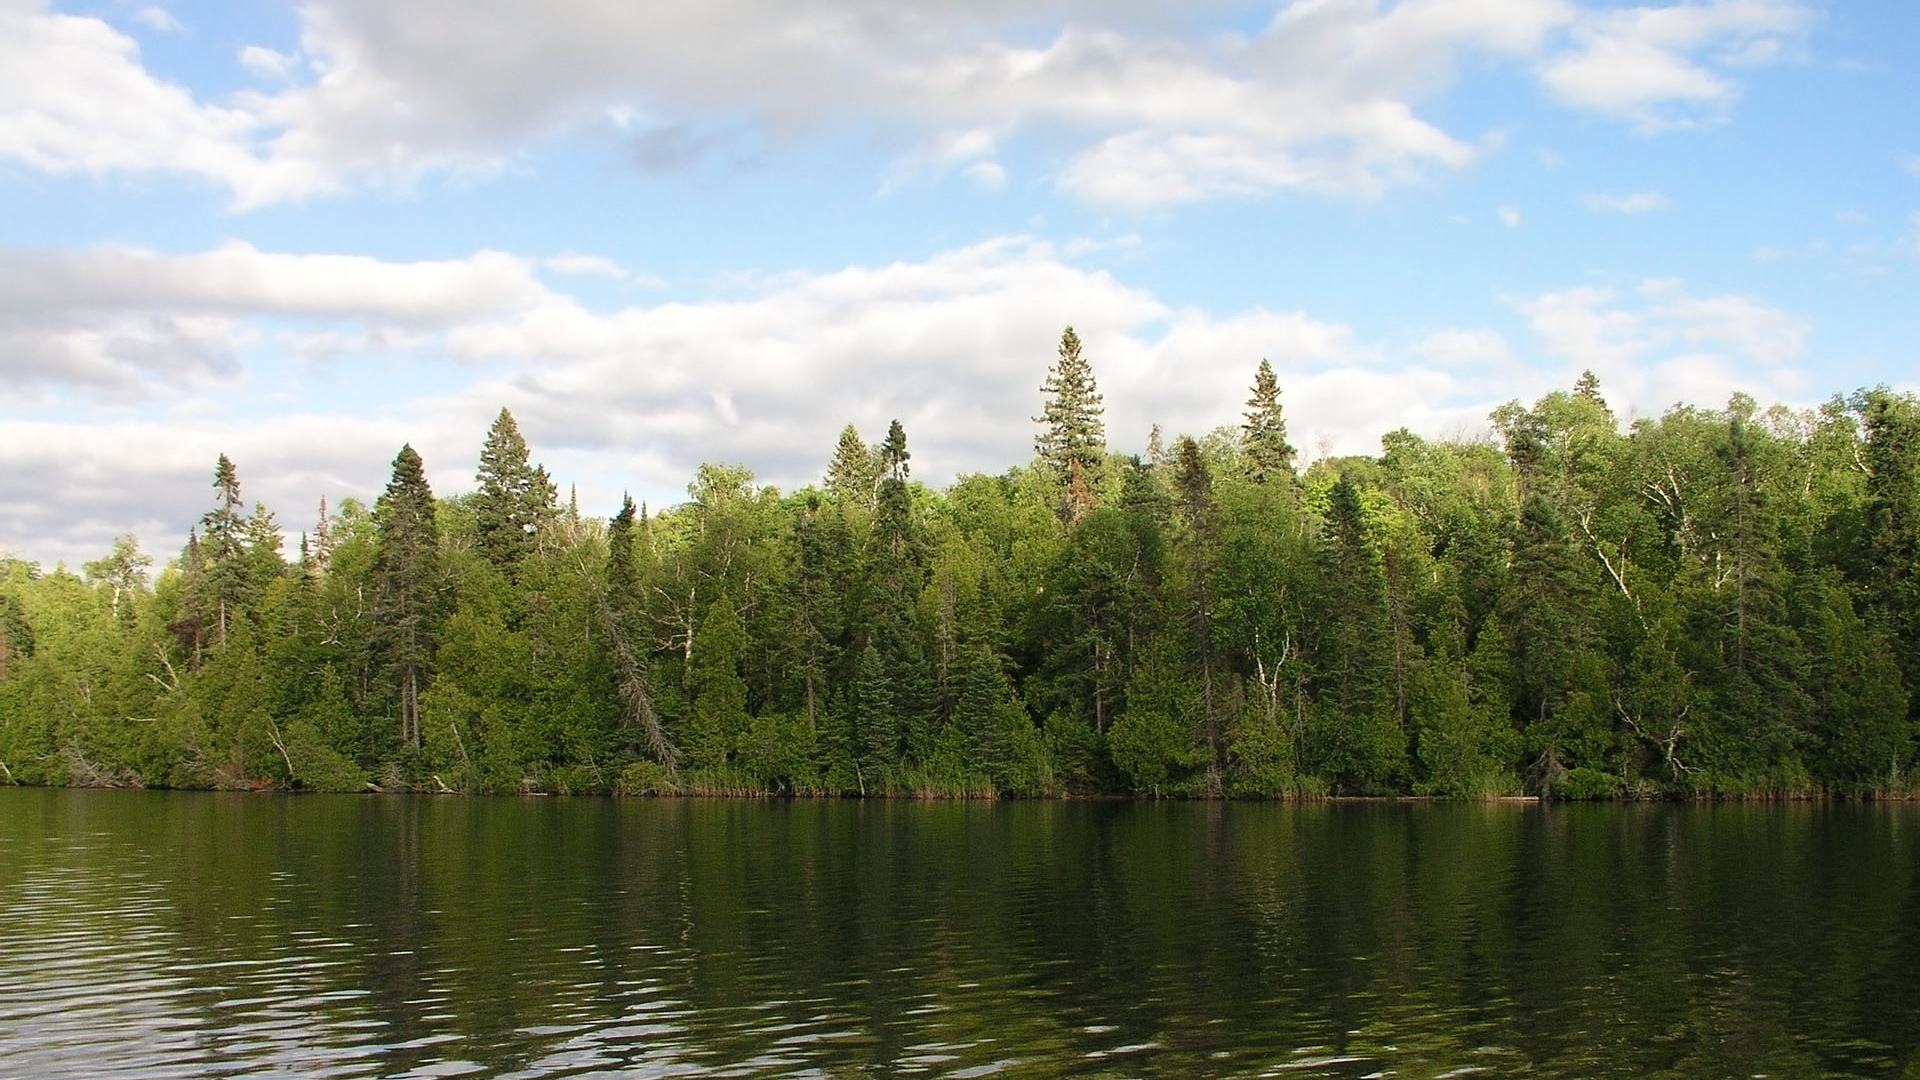 تصویر با کیفیت از درختان کاج و دریاچه و آسمان پاک و آبی 